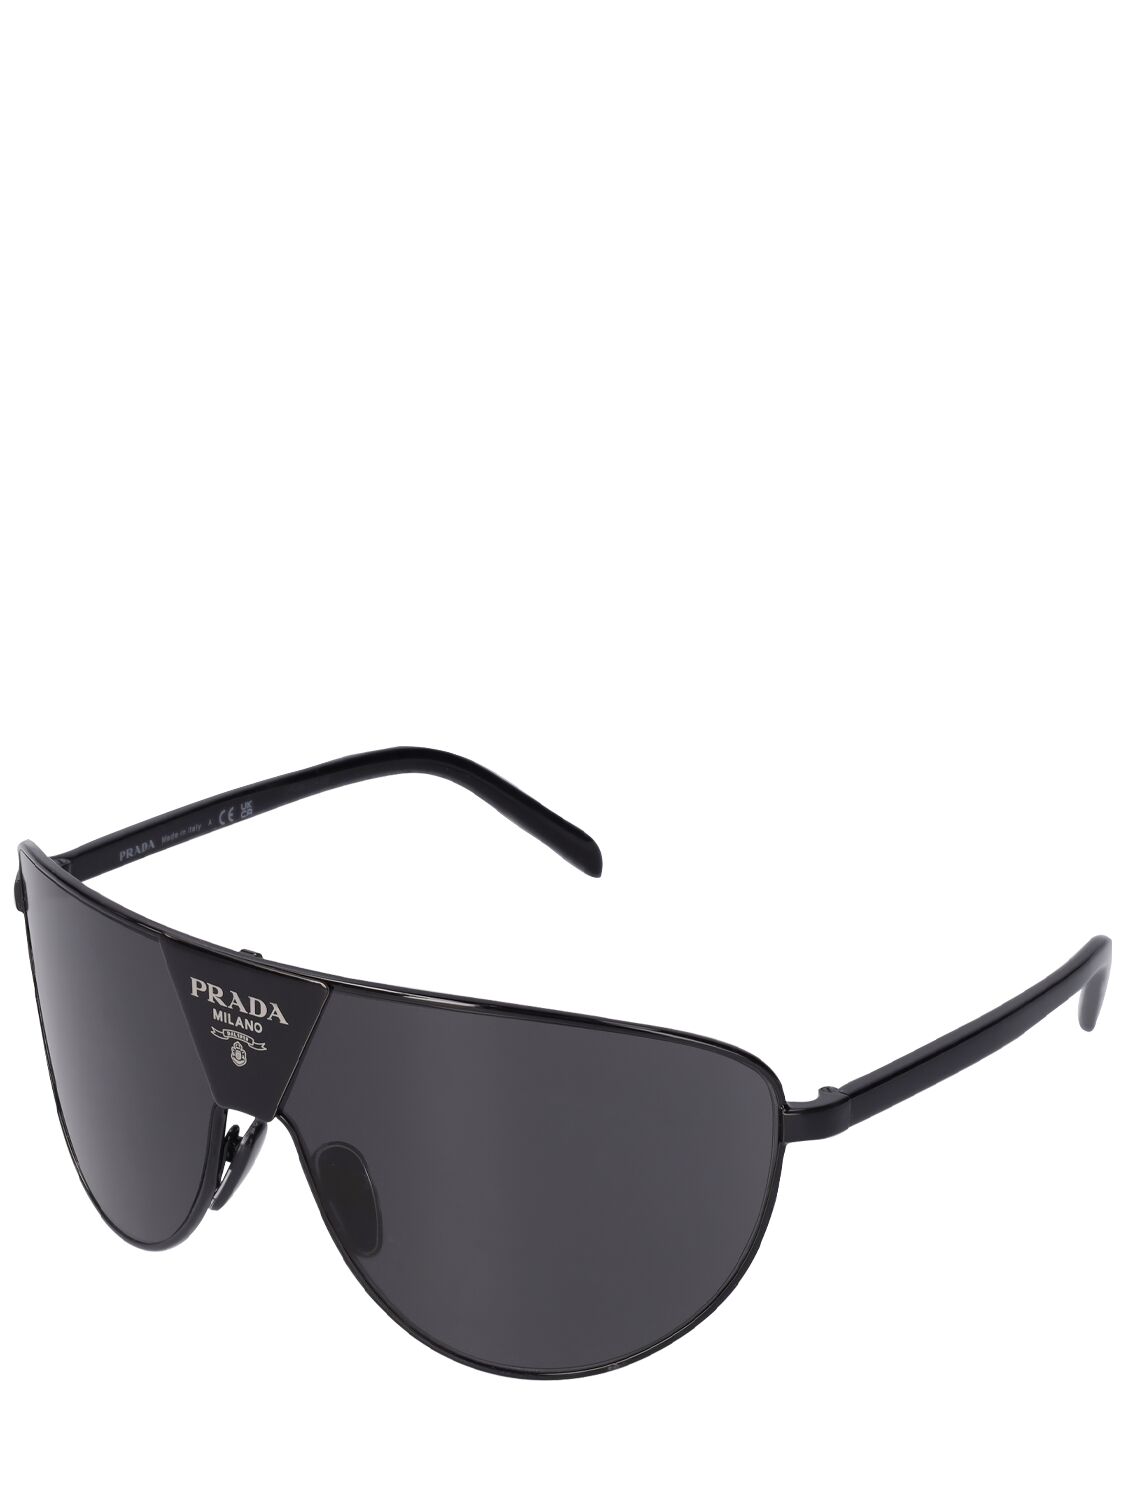 Shop Prada Catwalk Pilot Metal Sunglasses In Black,dark Grey